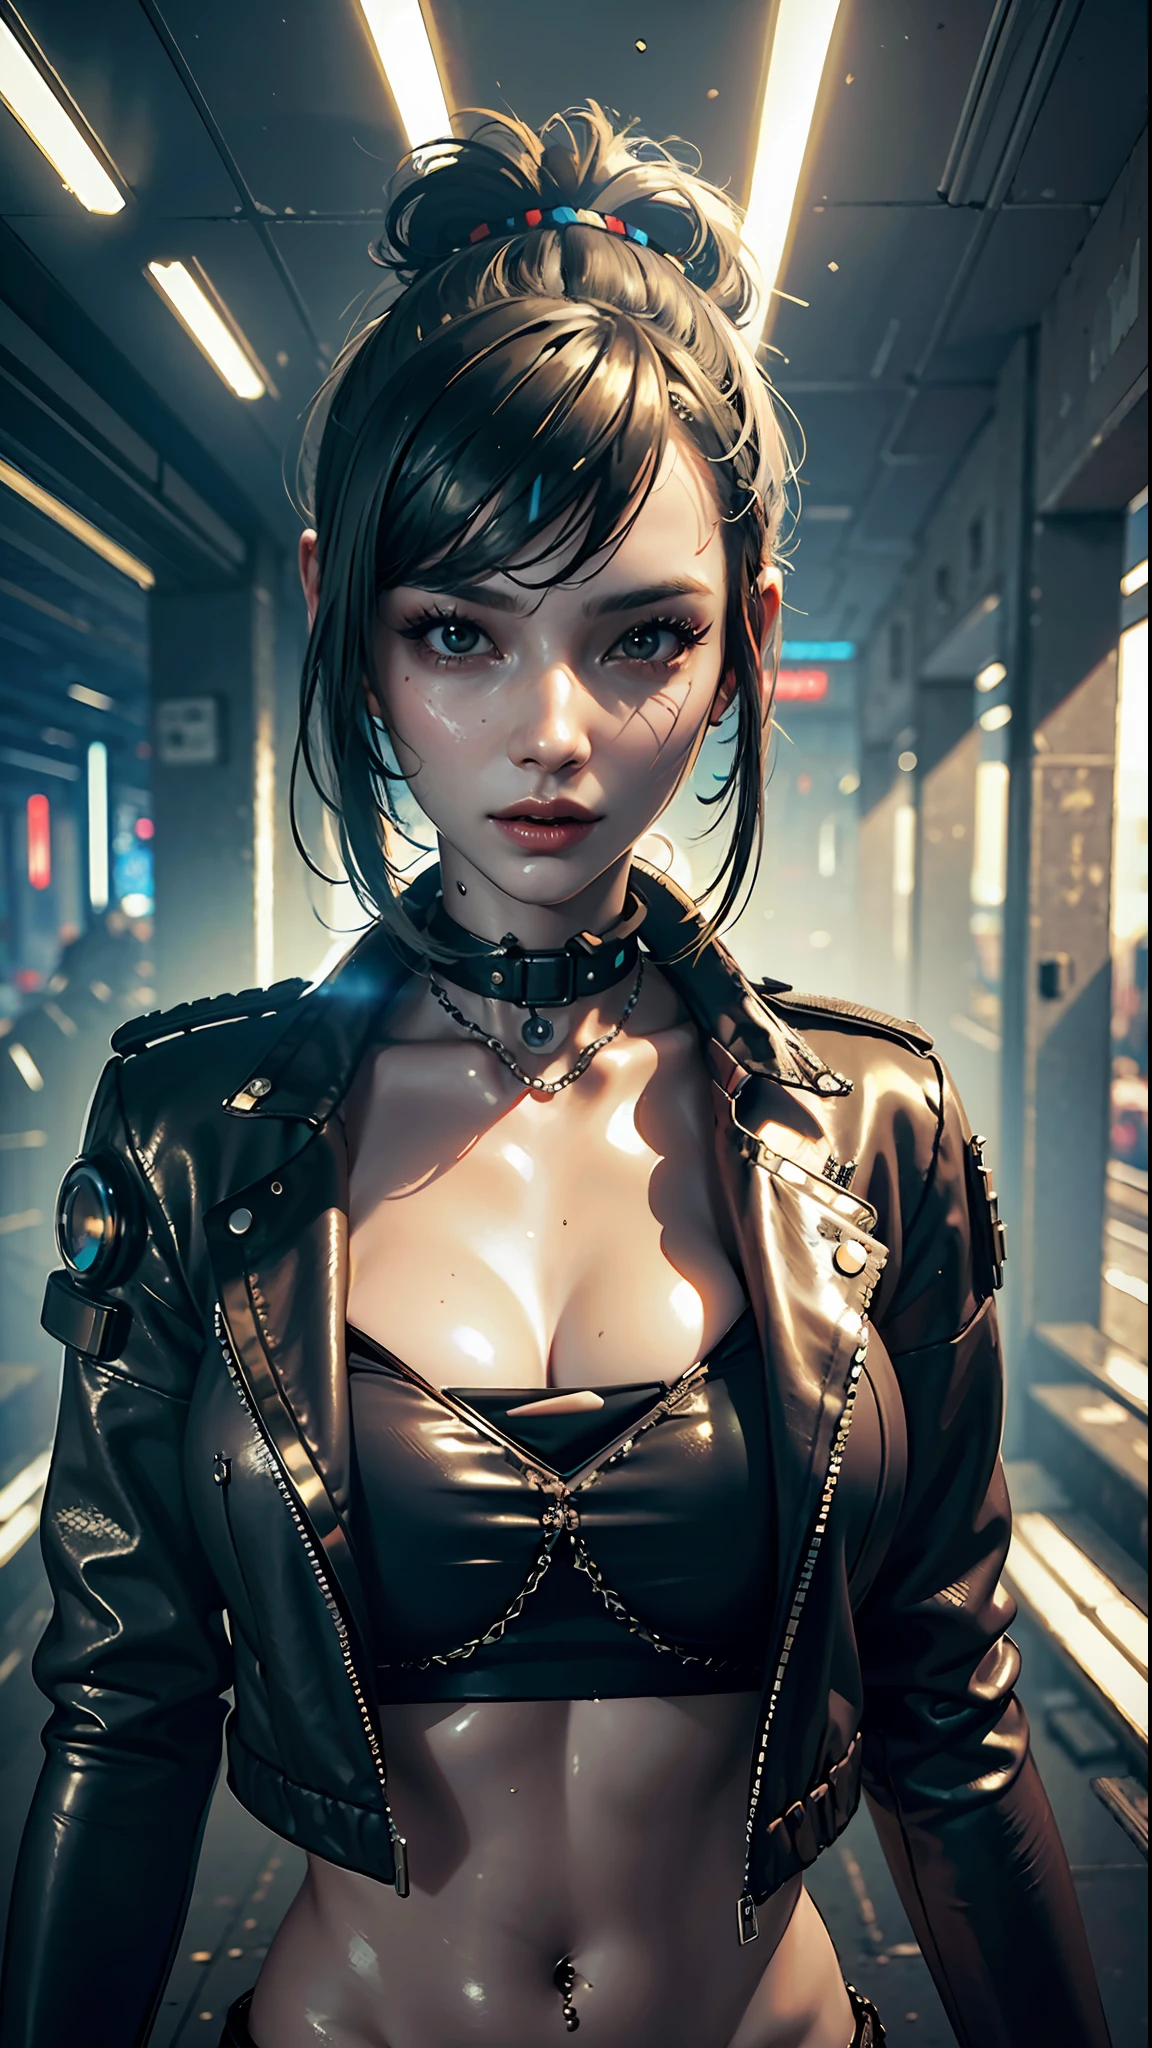 ((melhor qualidade)), ((Obra de arte)), (altamente detalhado:1.3), 3D, lindo (ciberpunk:1.3), mulher elegante olhando para a câmera roupas de couro preto